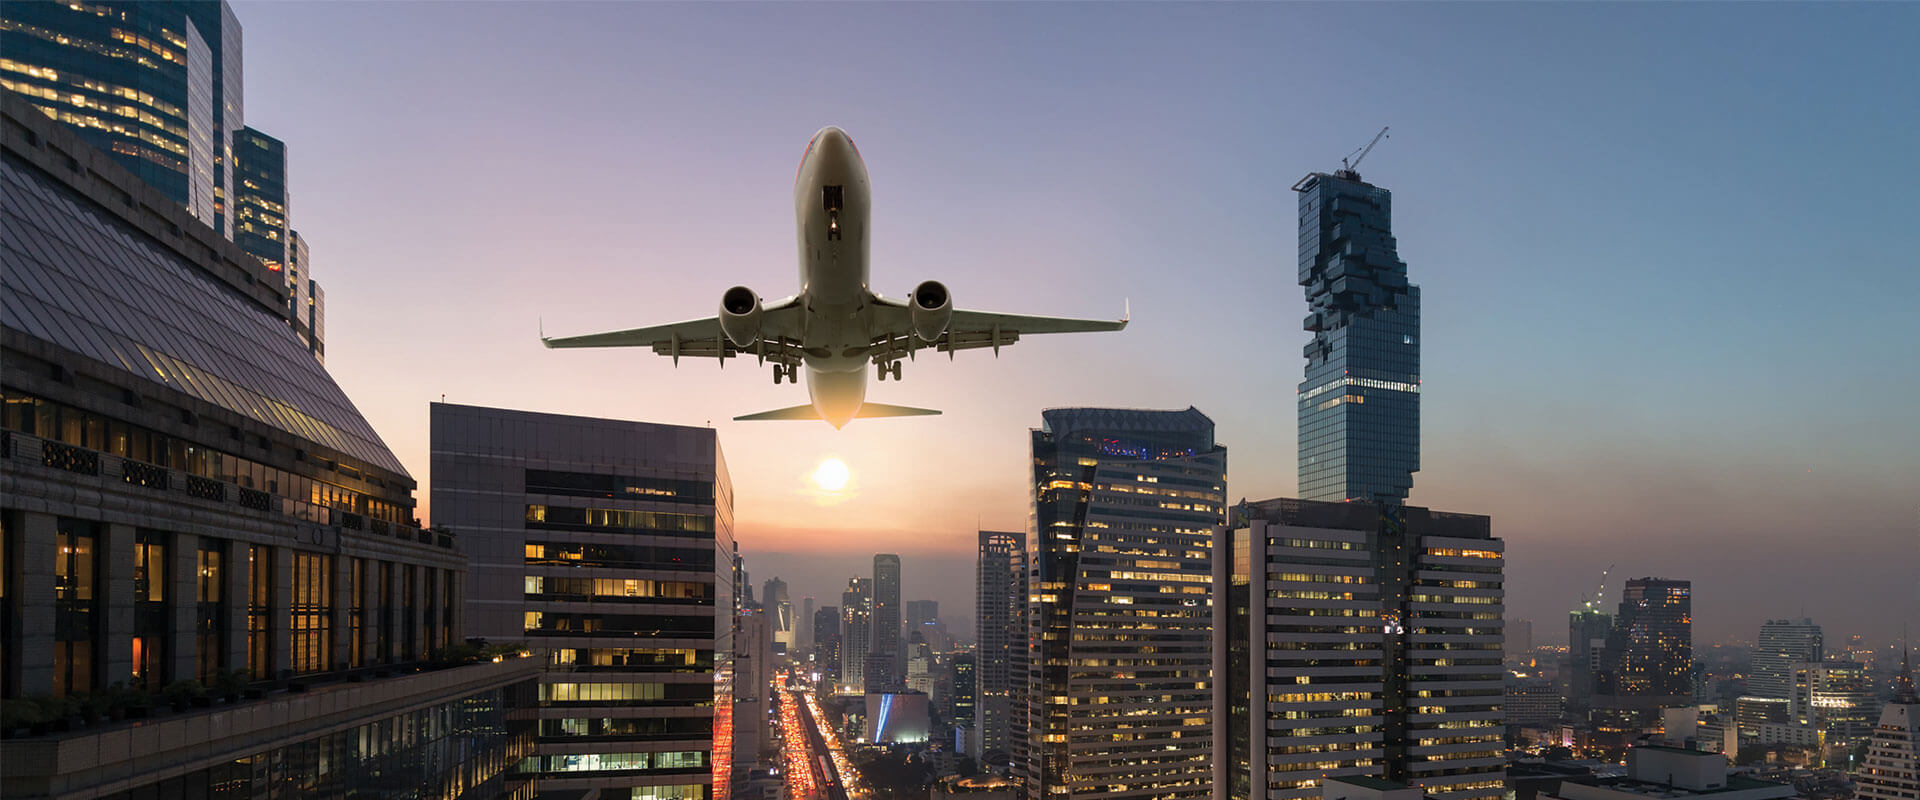 Valore della progettazione: supportare le compagnie aeree per un ritorno sicuro al servizio